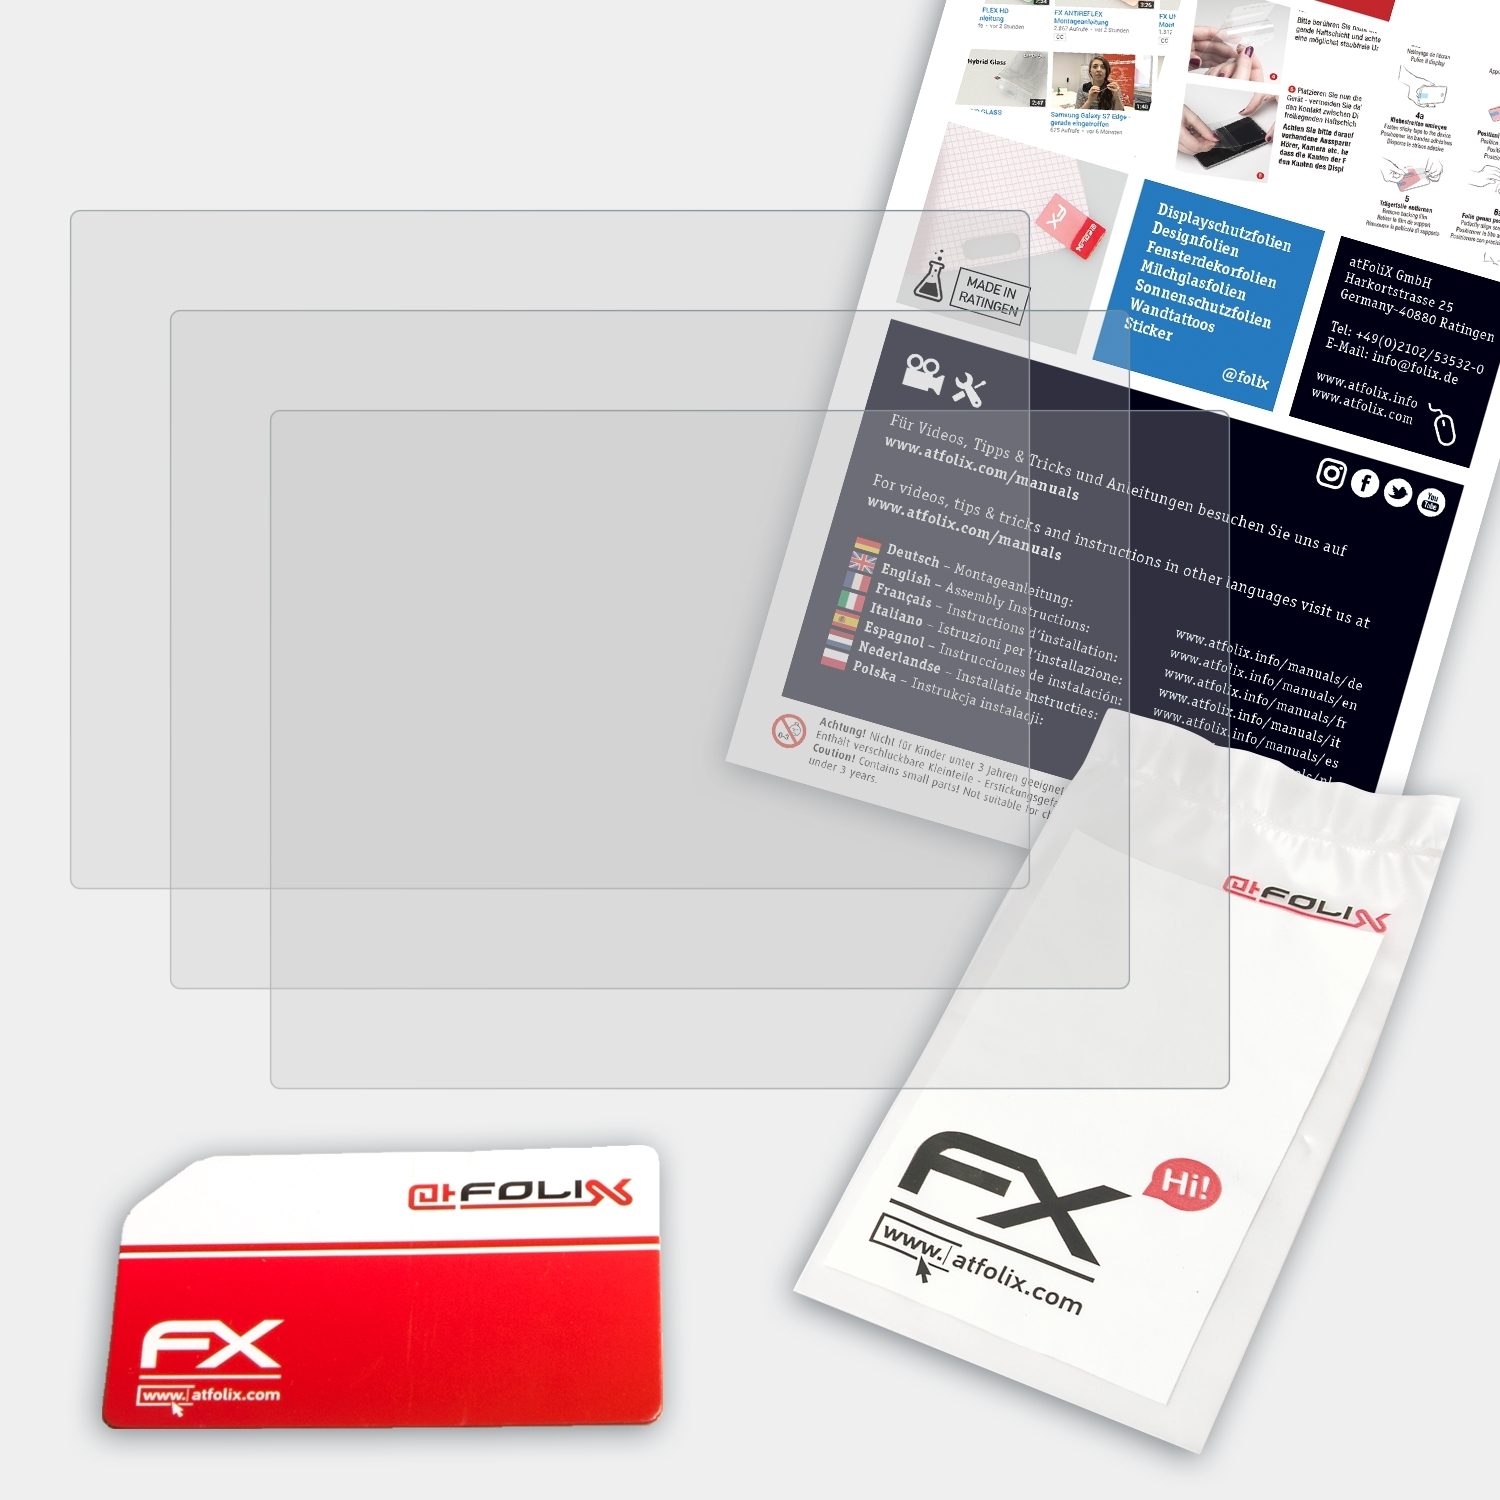 FX-Antireflex XQ2) Displayschutz(für Fujifilm ATFOLIX 3x